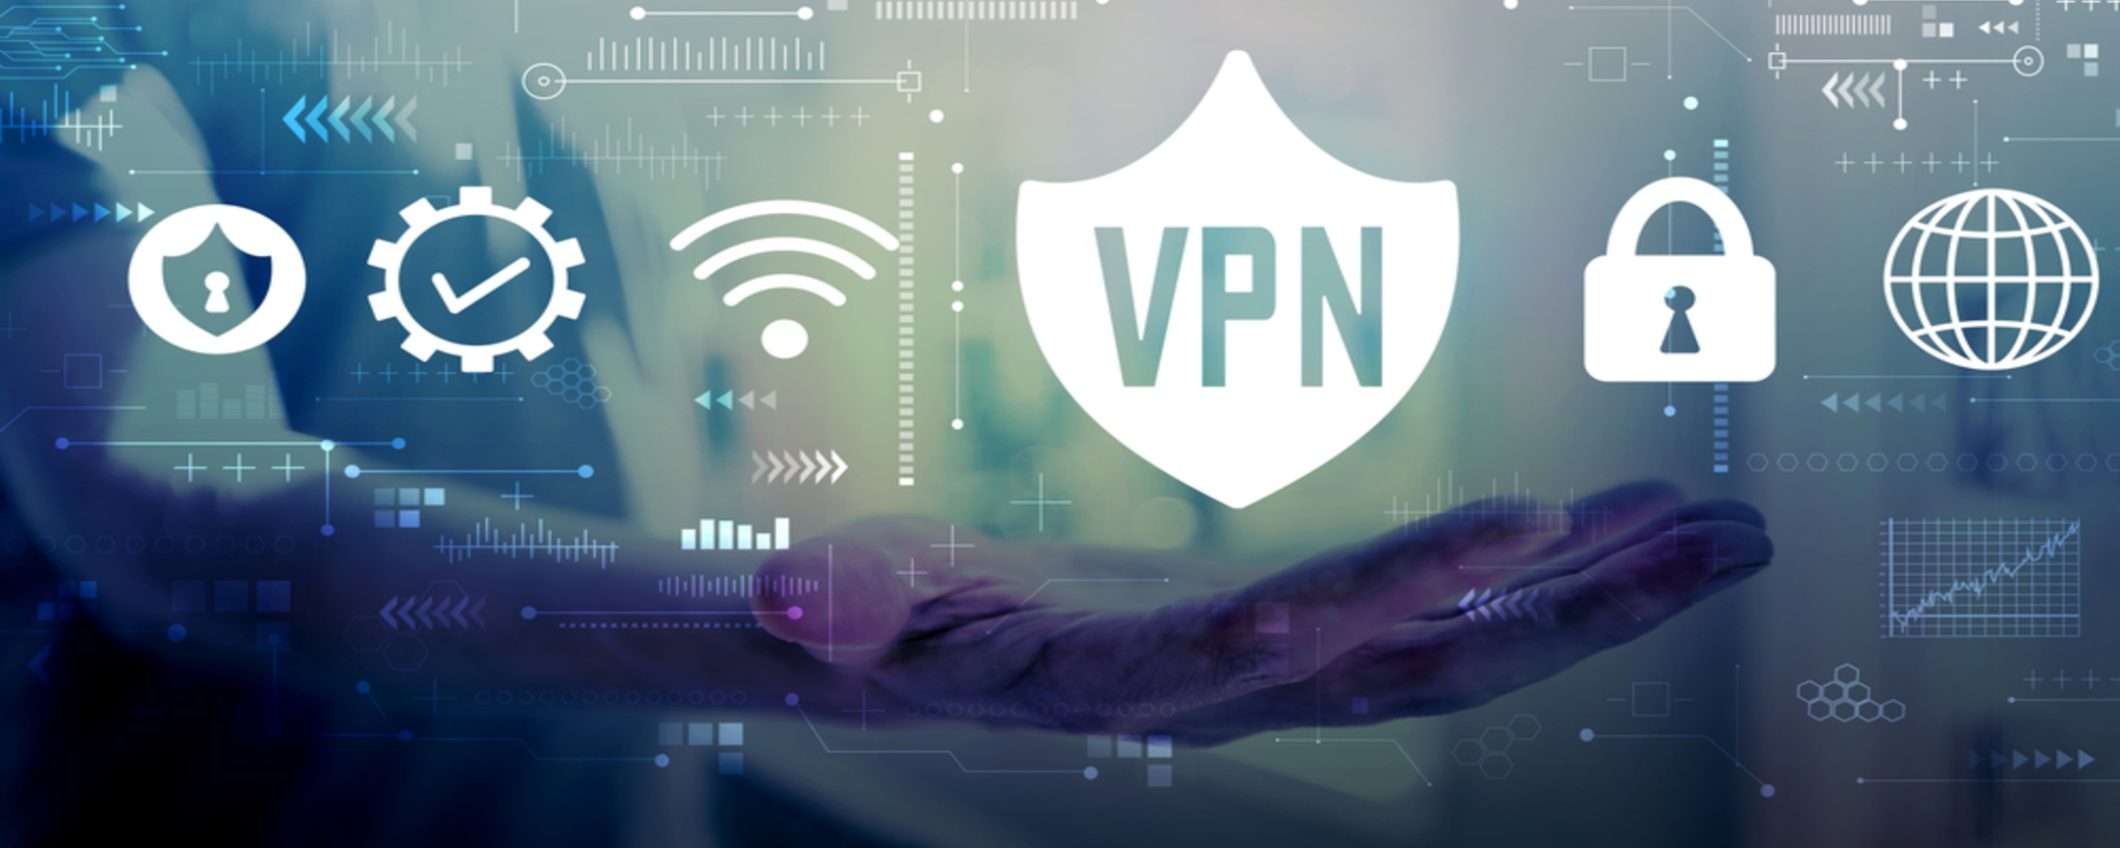 PureVPN, la VPN veloce scontata dell'82%: approfitta subito